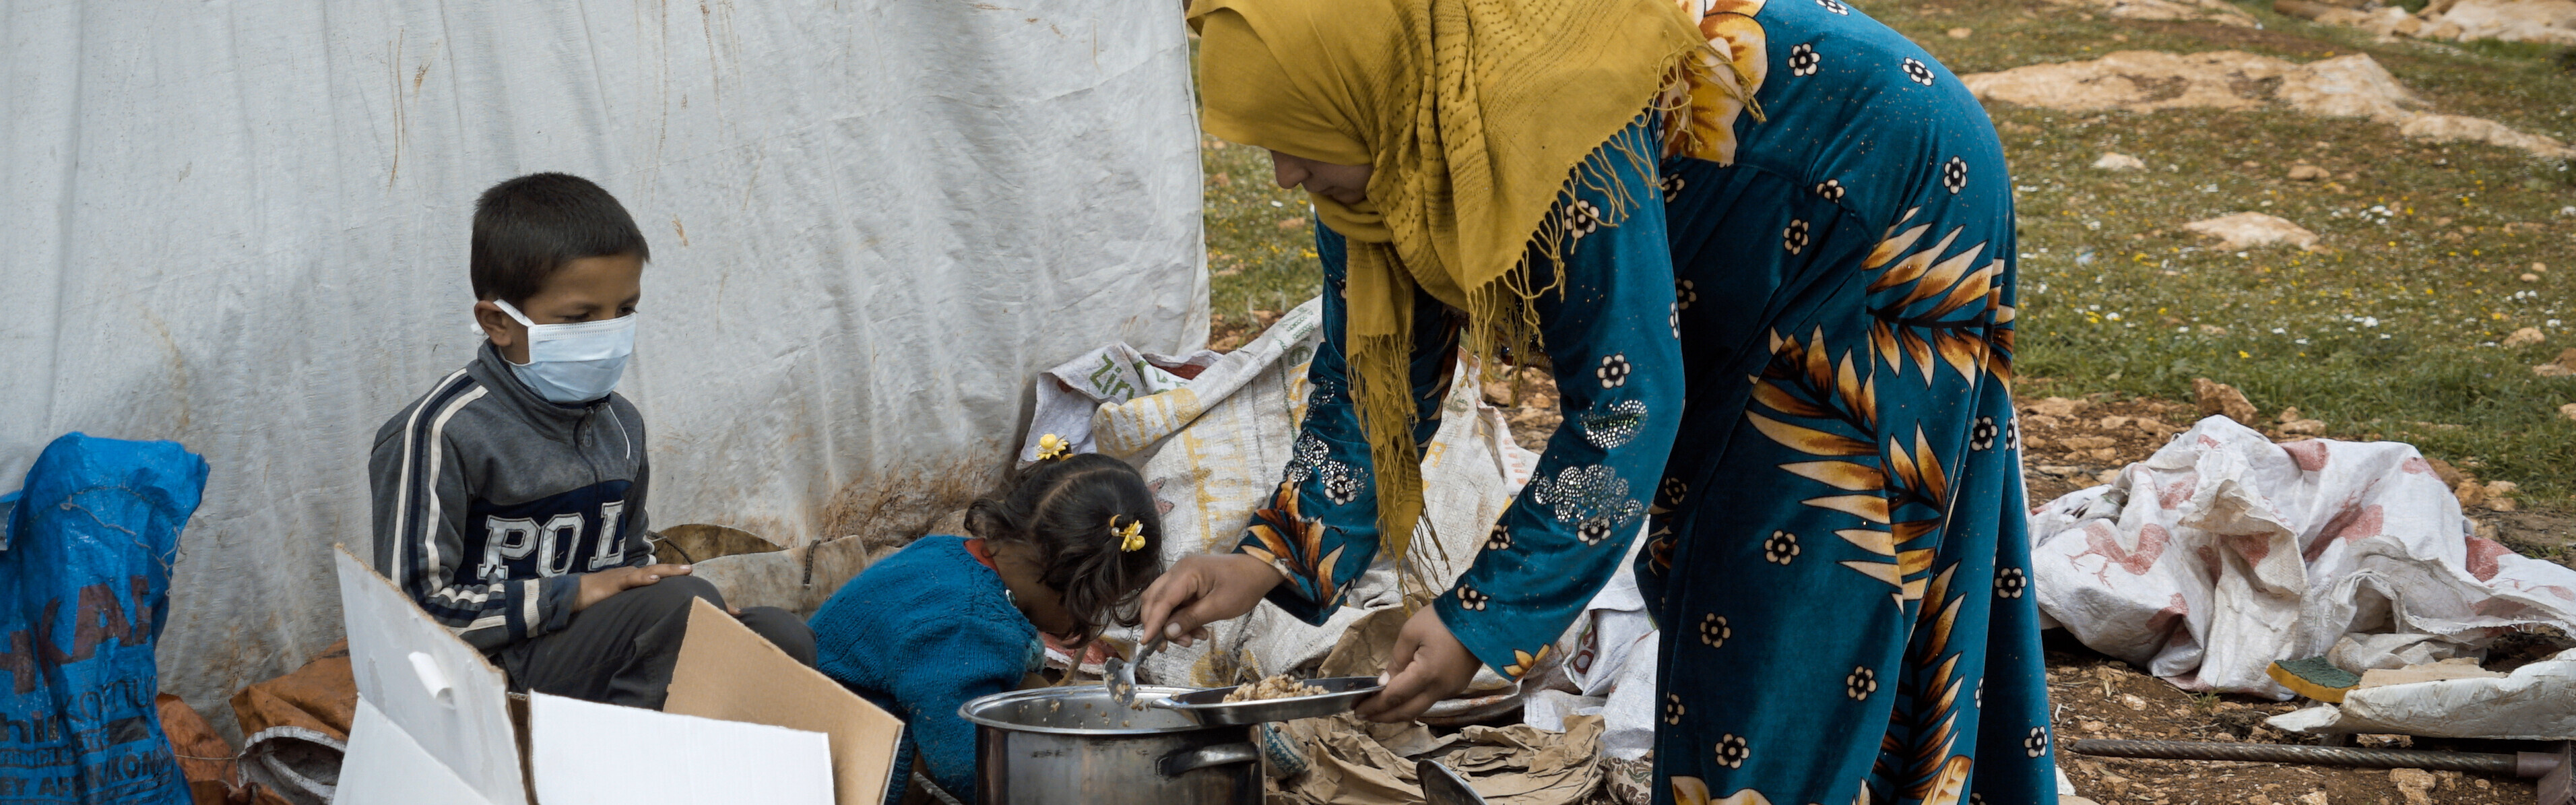 Frau und Kinder, die als Binnenvertriebene in einer Notunterkunft in Syrien leben (Symbolbild)